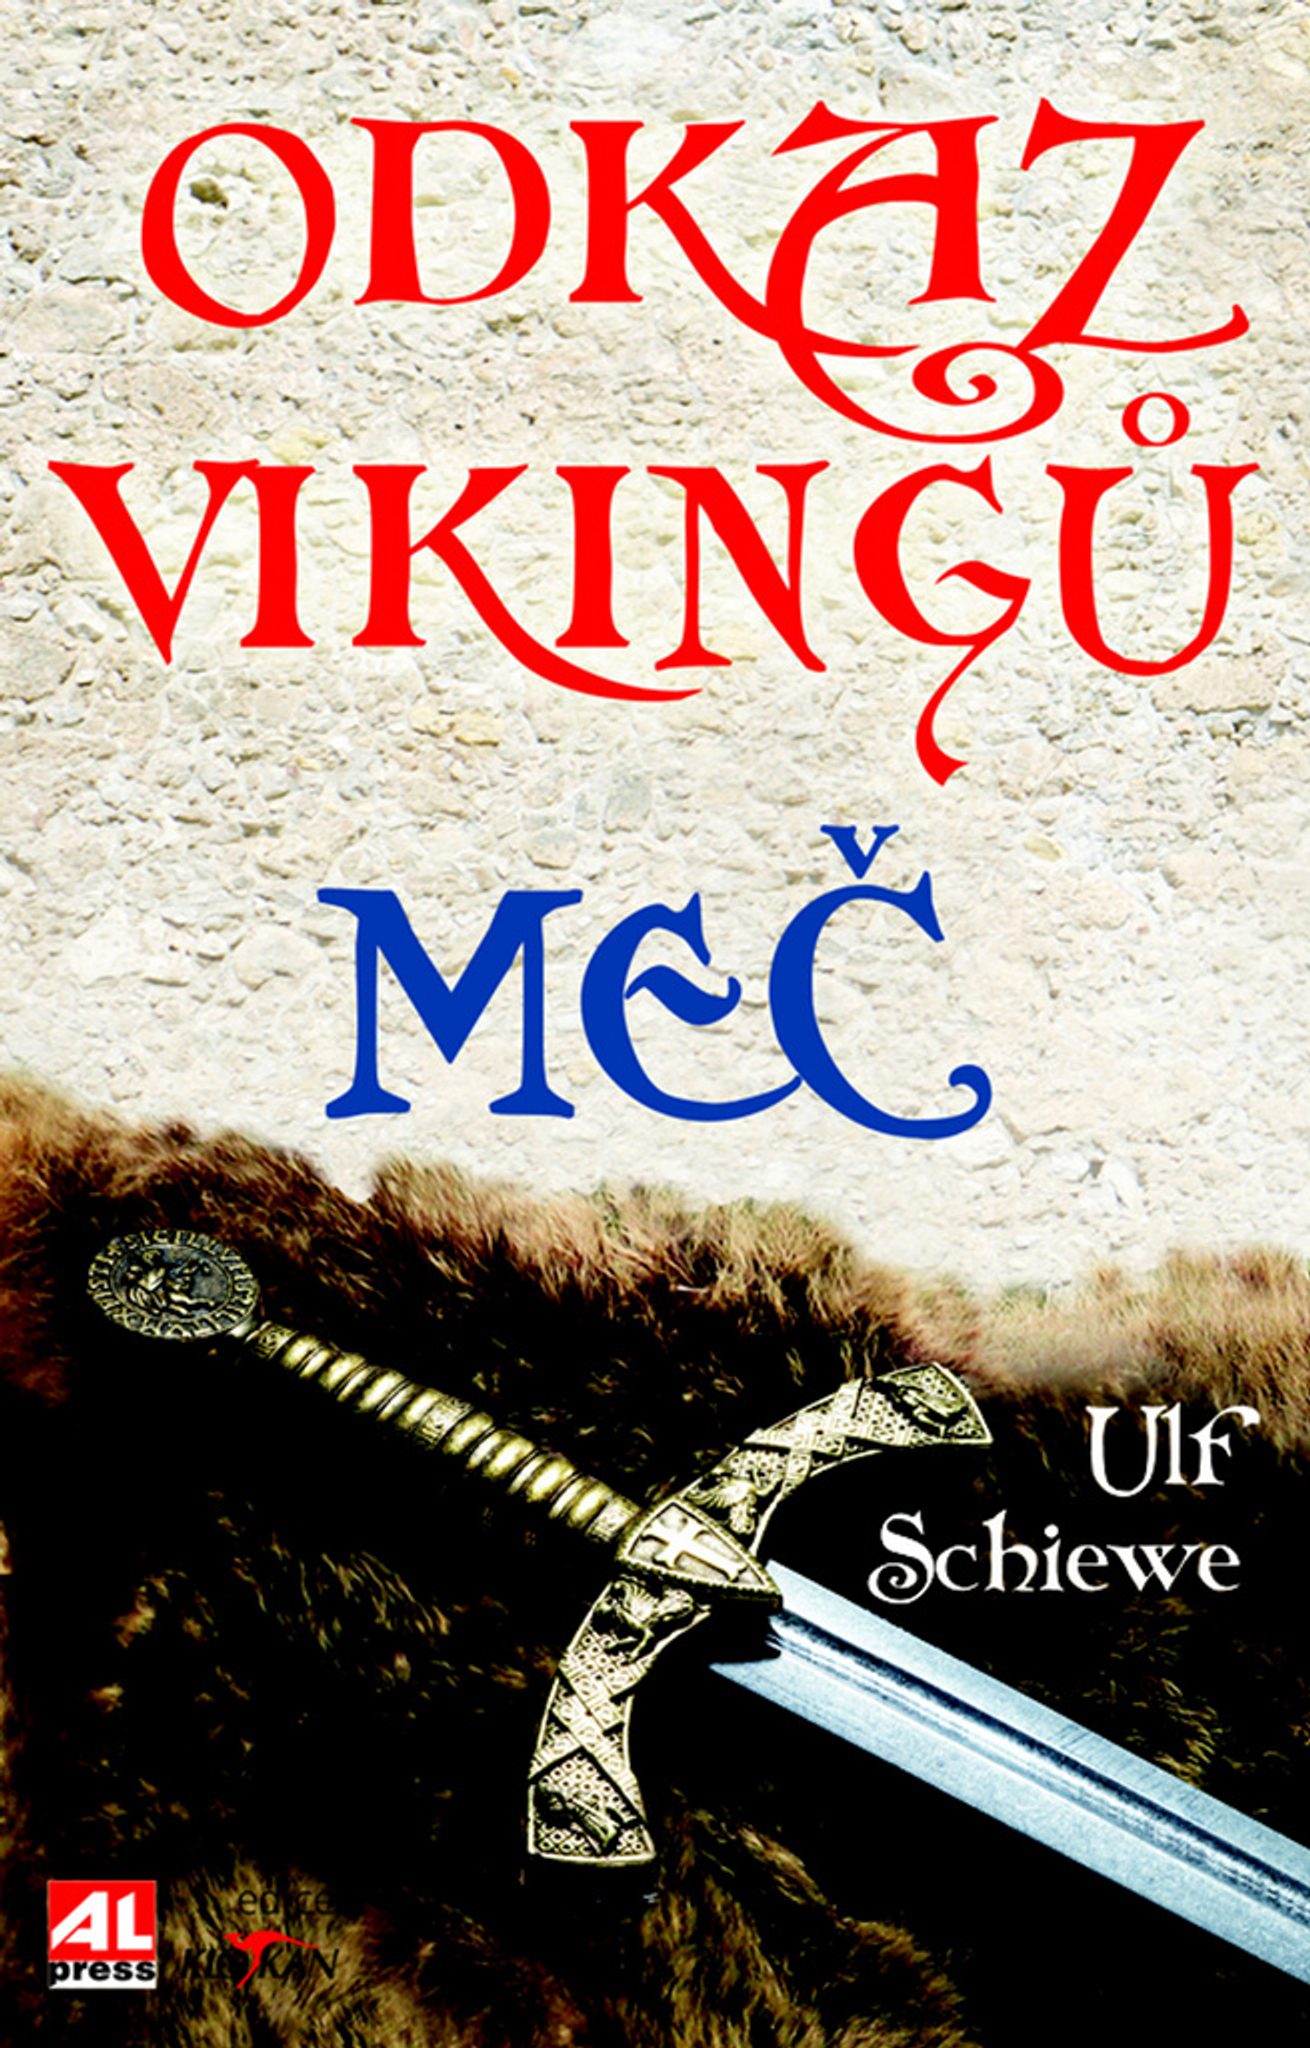 Odkaz viking - Me - Kliknutm na obrzek zavete